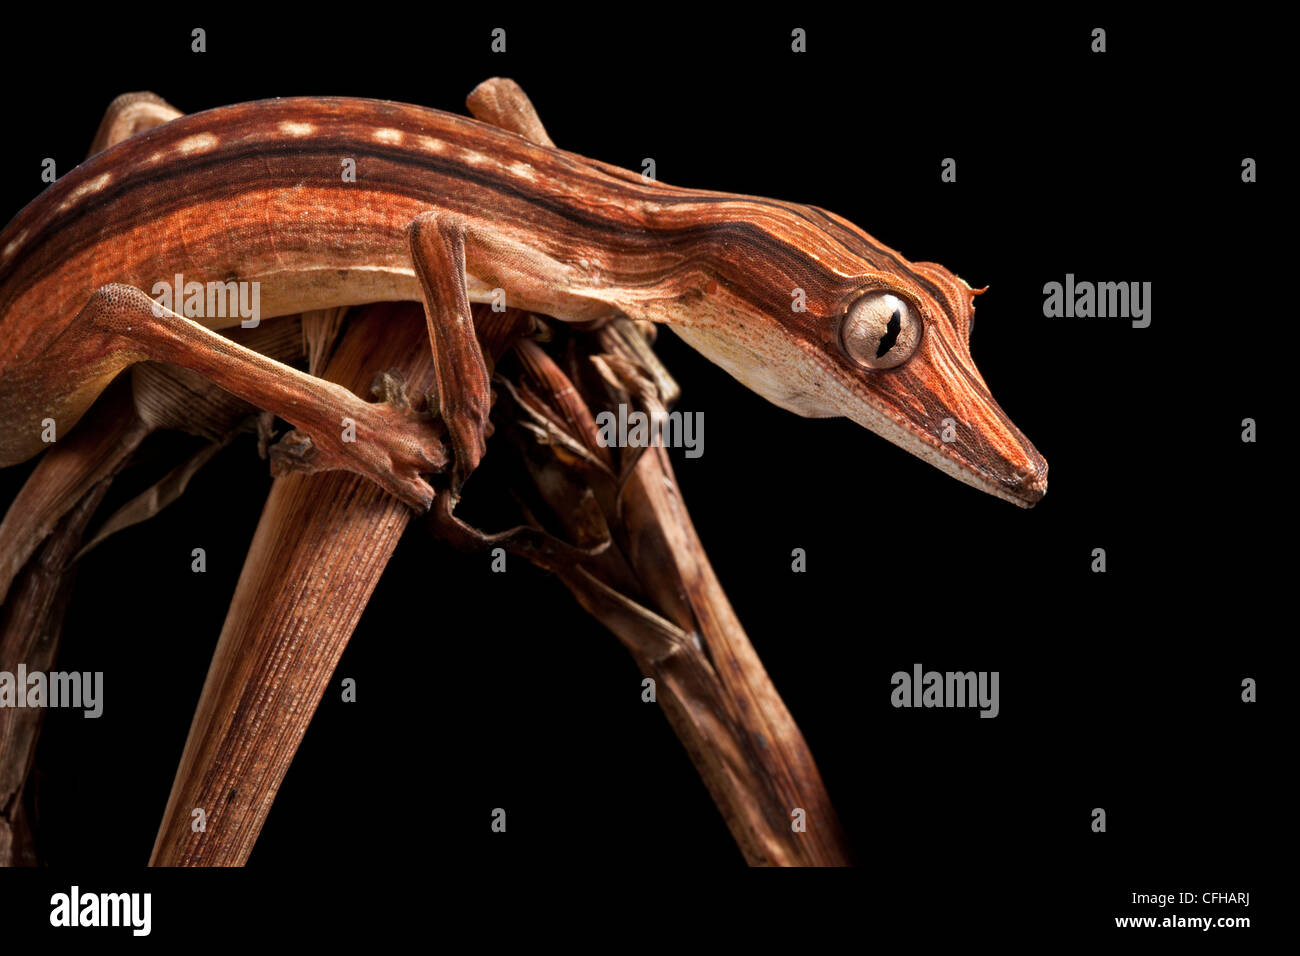 Blatt-tailed Gecko zeigen dunklere Nocturanal Färbung, getarnt unter Toten ausgekleidet Palme Wedel, Madagaskar Stockfoto